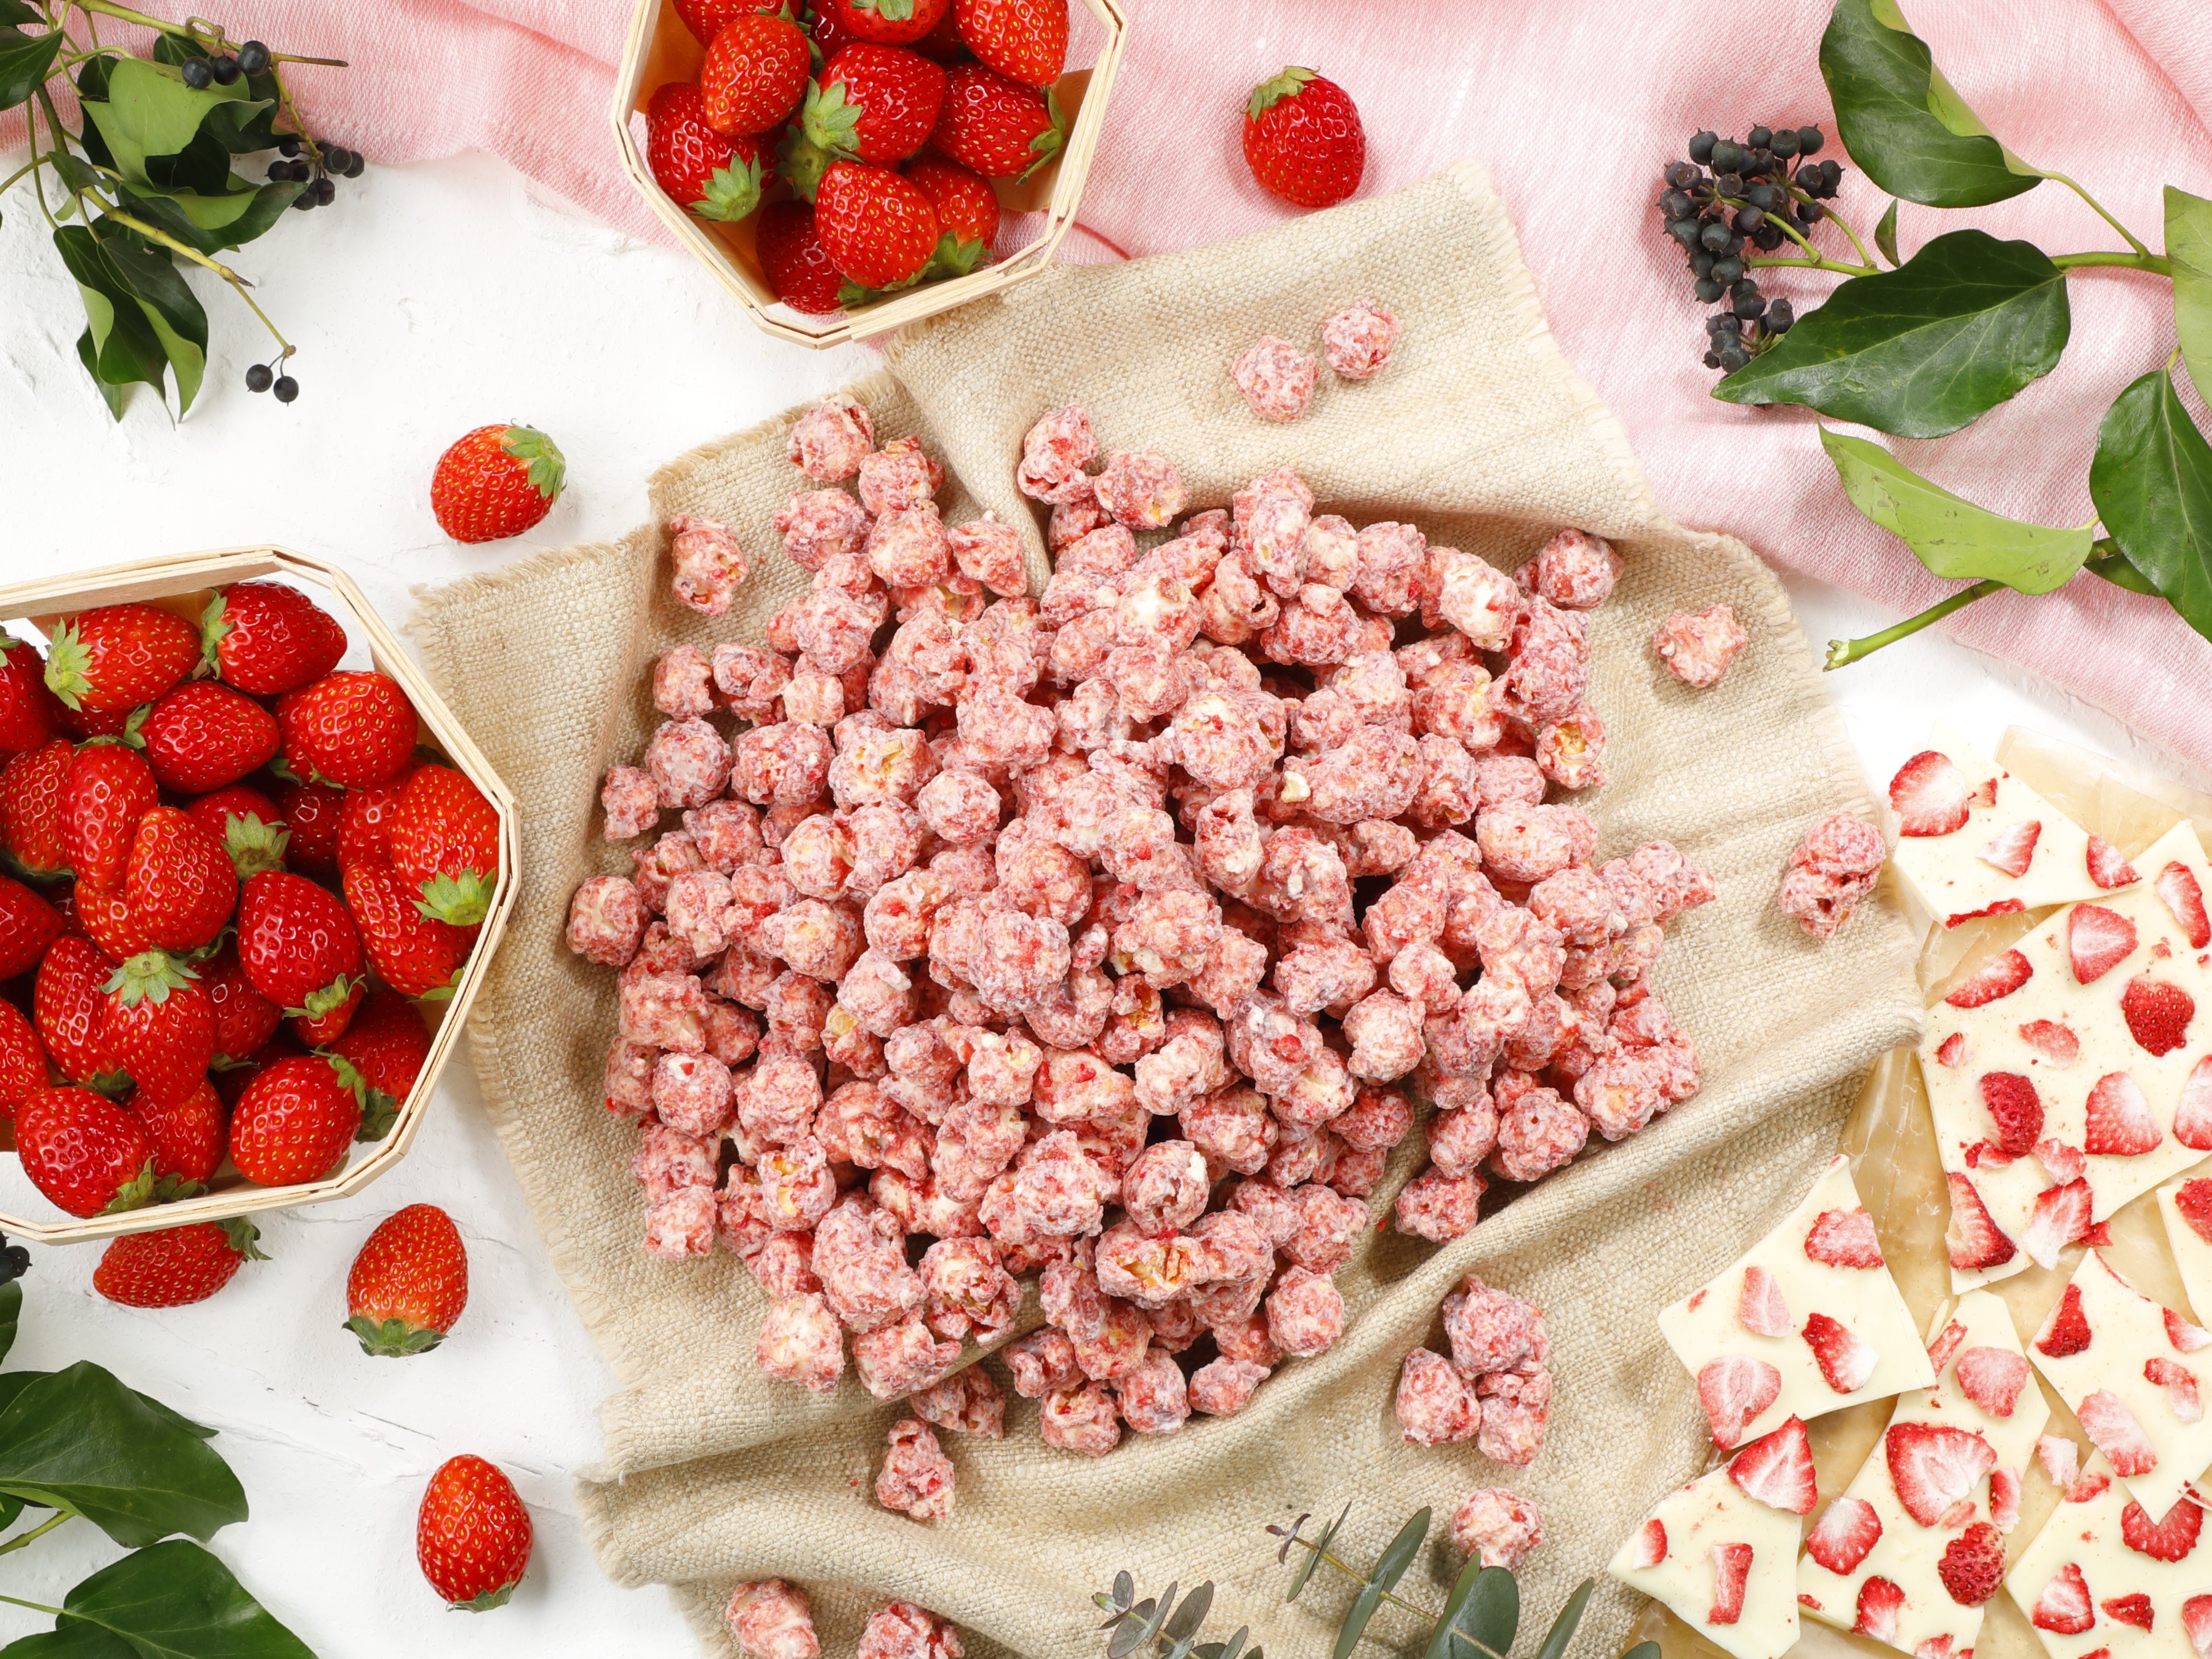 イチゴ好きにはたまらない 桜色がキュートな甘酸っぱい春限定レシピ ベリーベリーホワイトチョコレート 21年2月15日 月 より期間限定 数量限定 で発売 Garrett Japan合同会社のプレスリリース